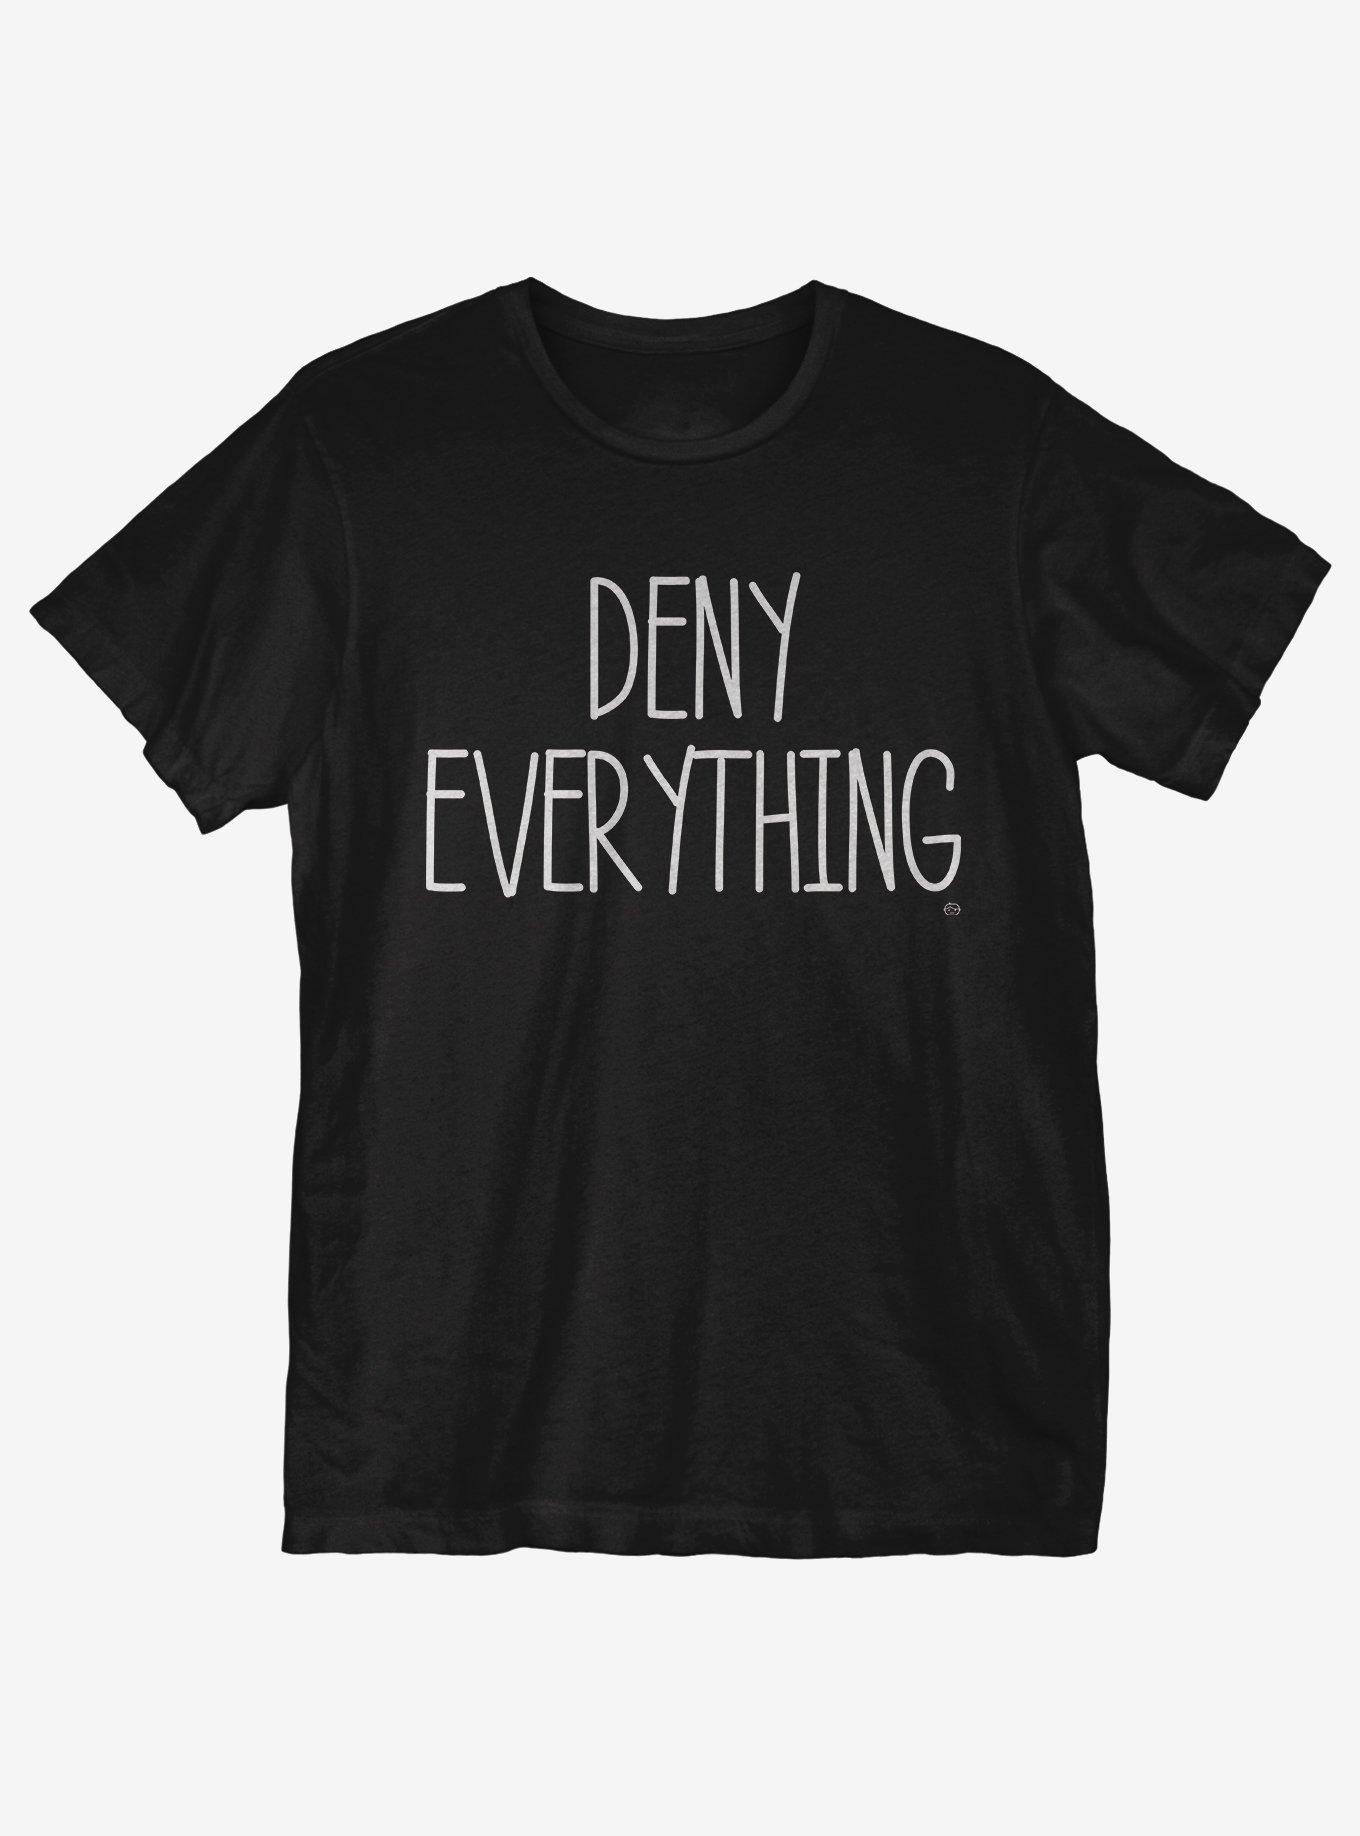 Deny Everything T-Shirt